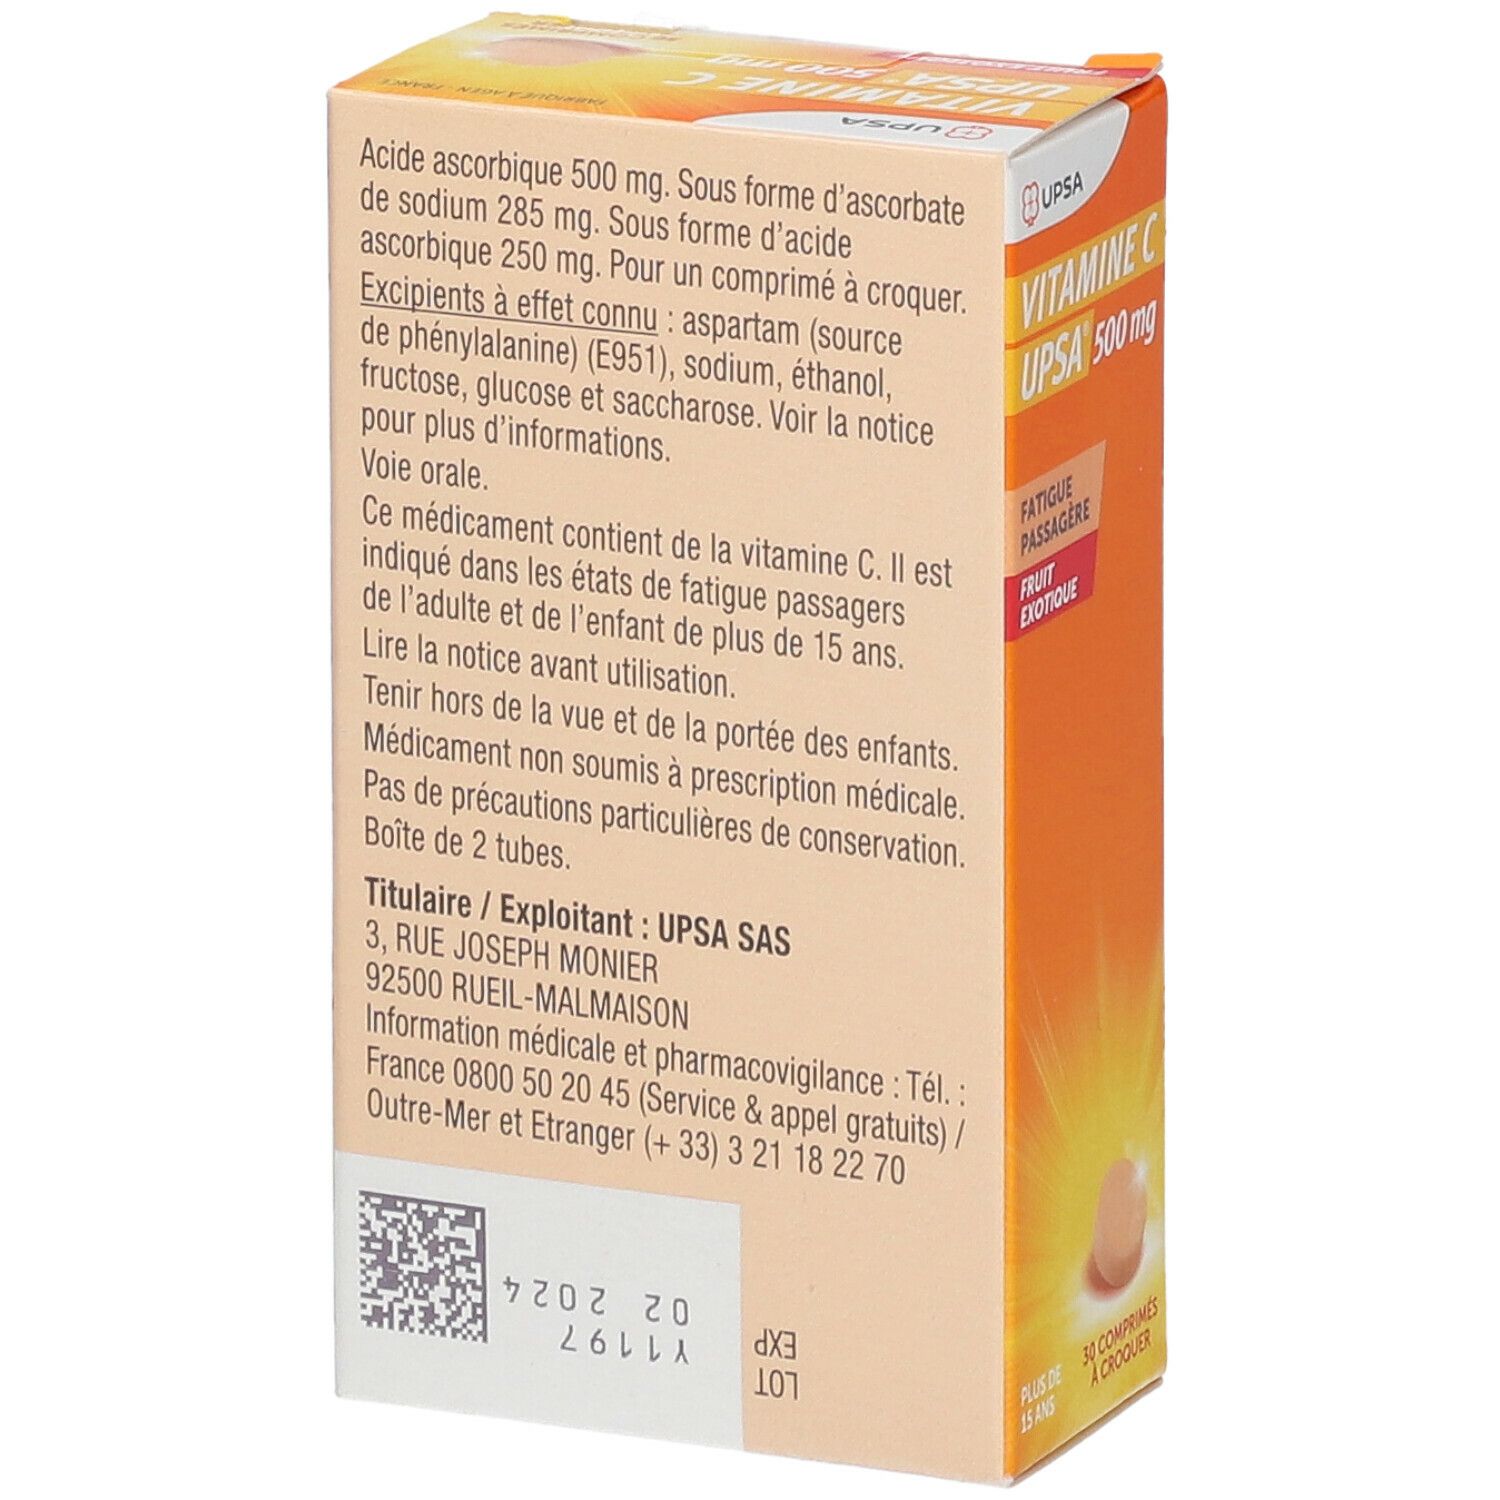 Vitamine C Upsa® 500 mg fruit exotique